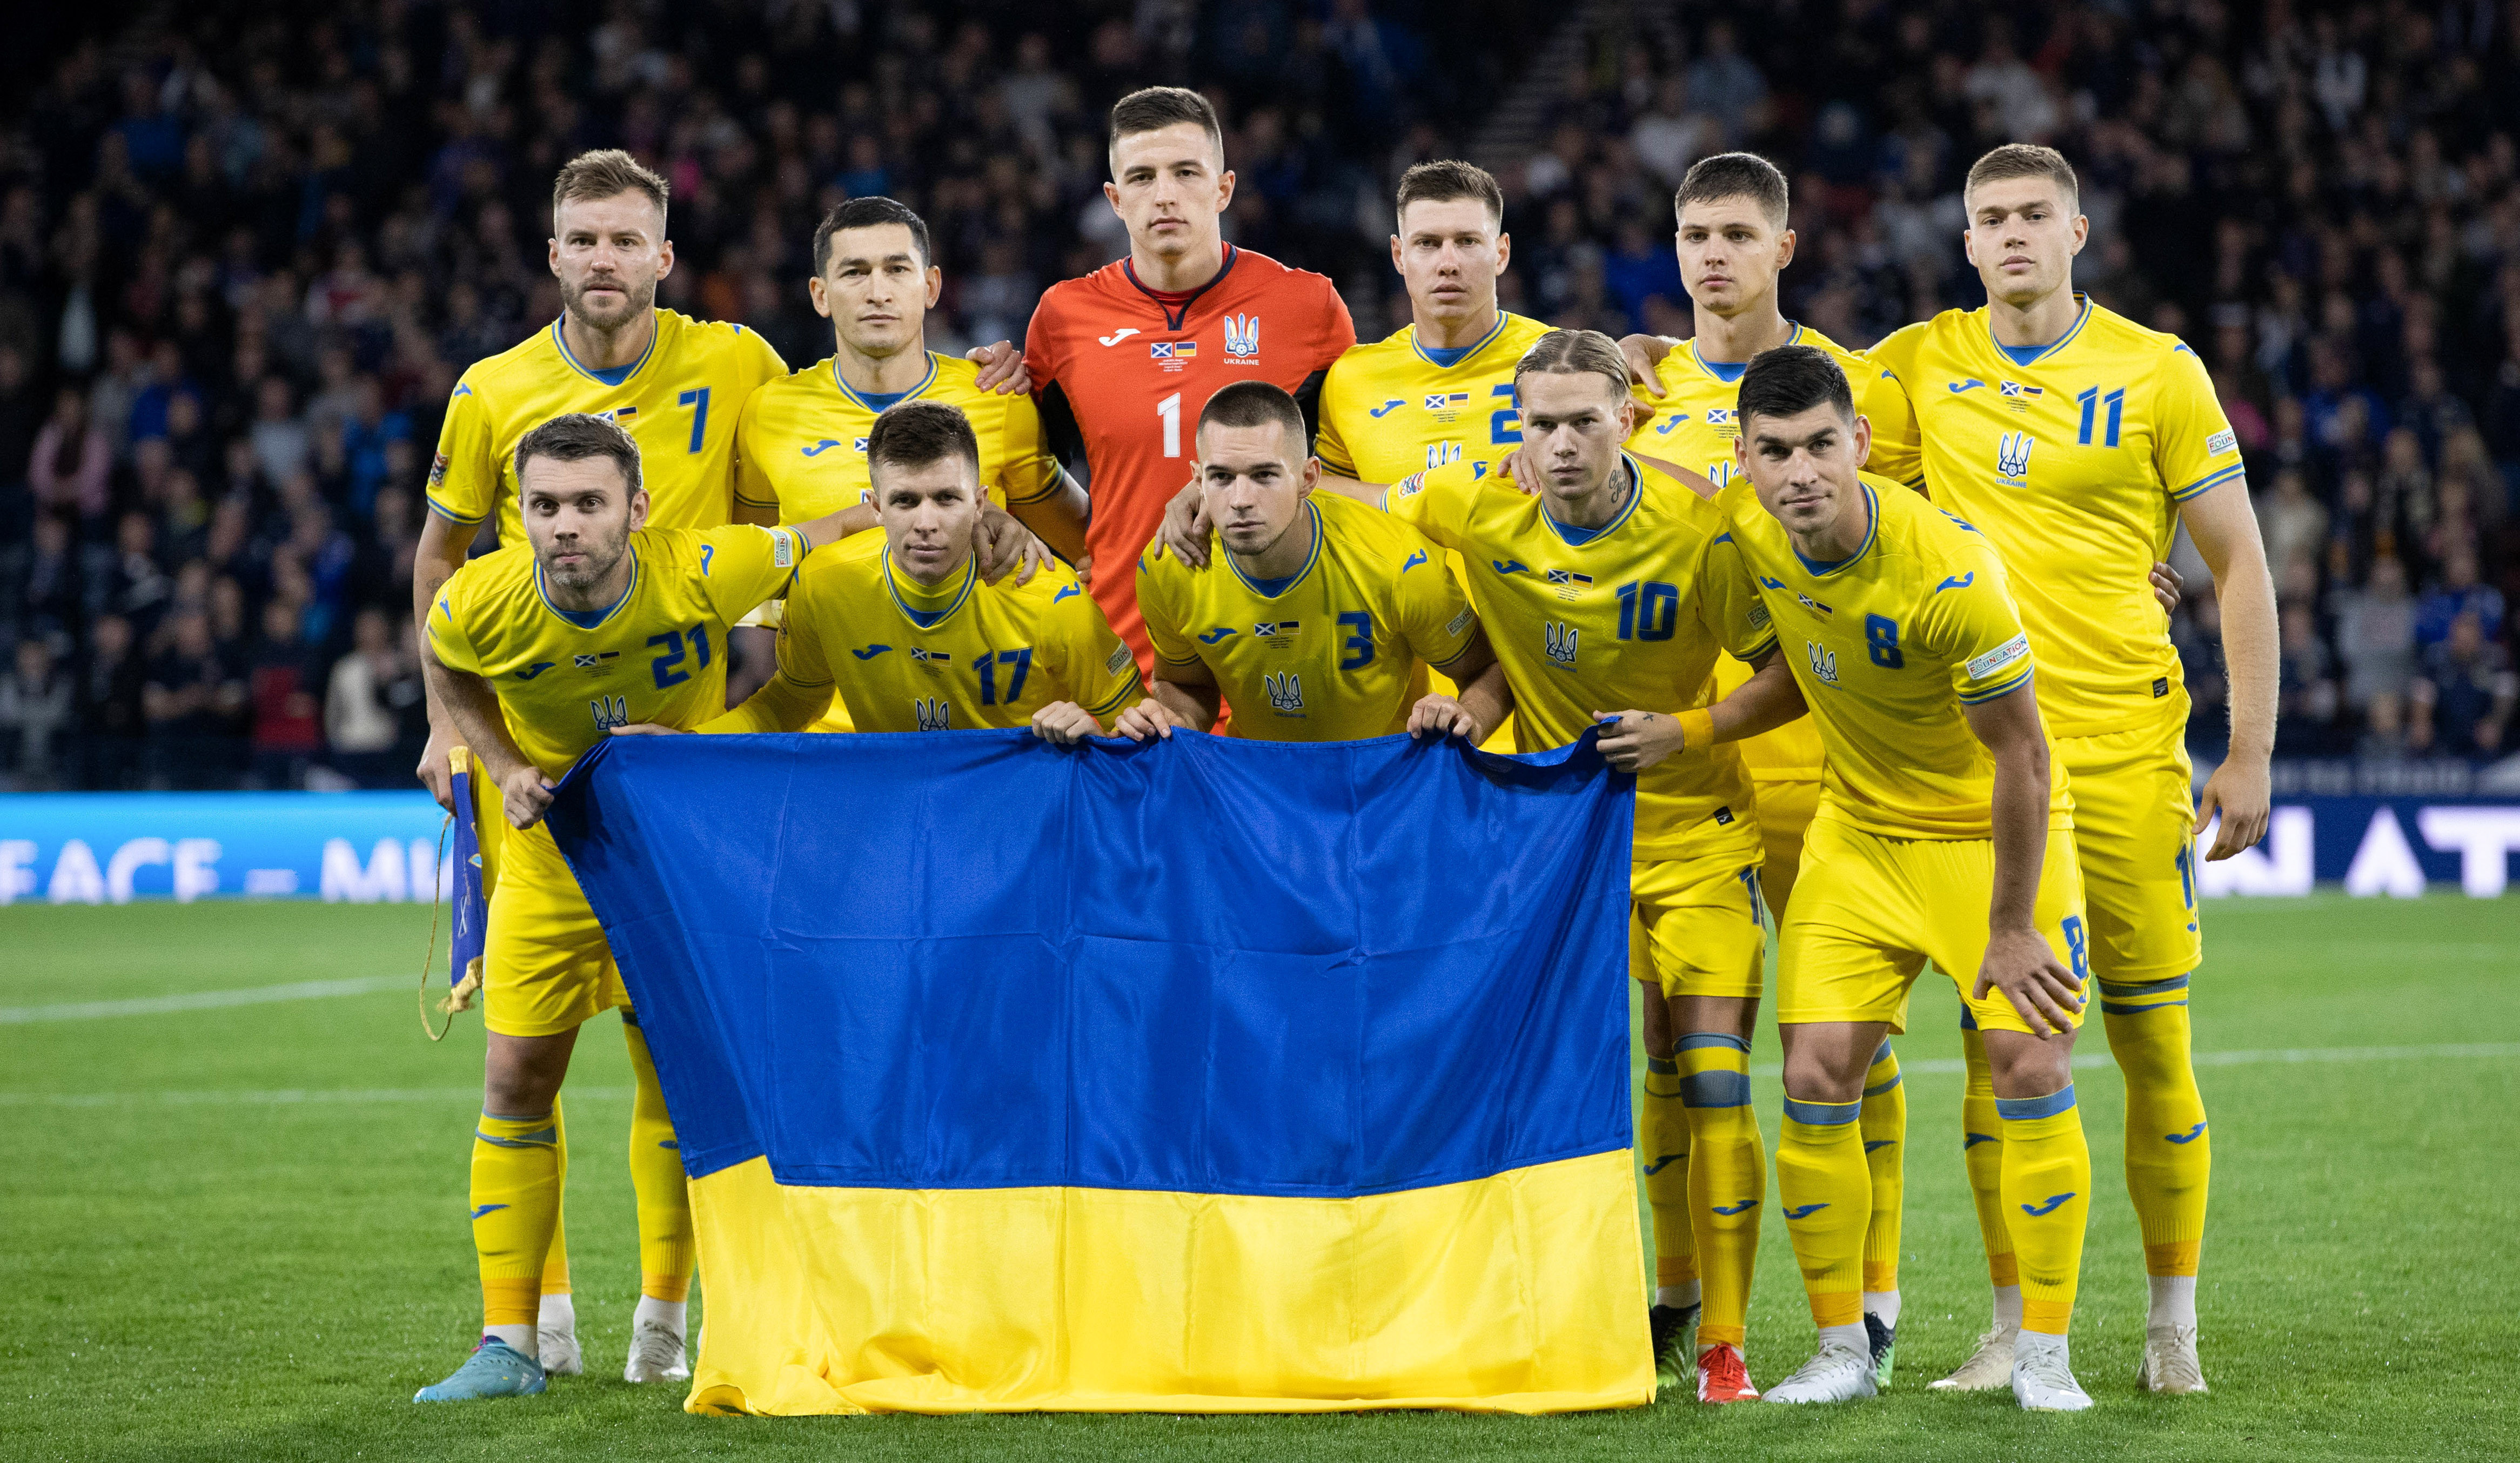 Украина футбол матчи результаты